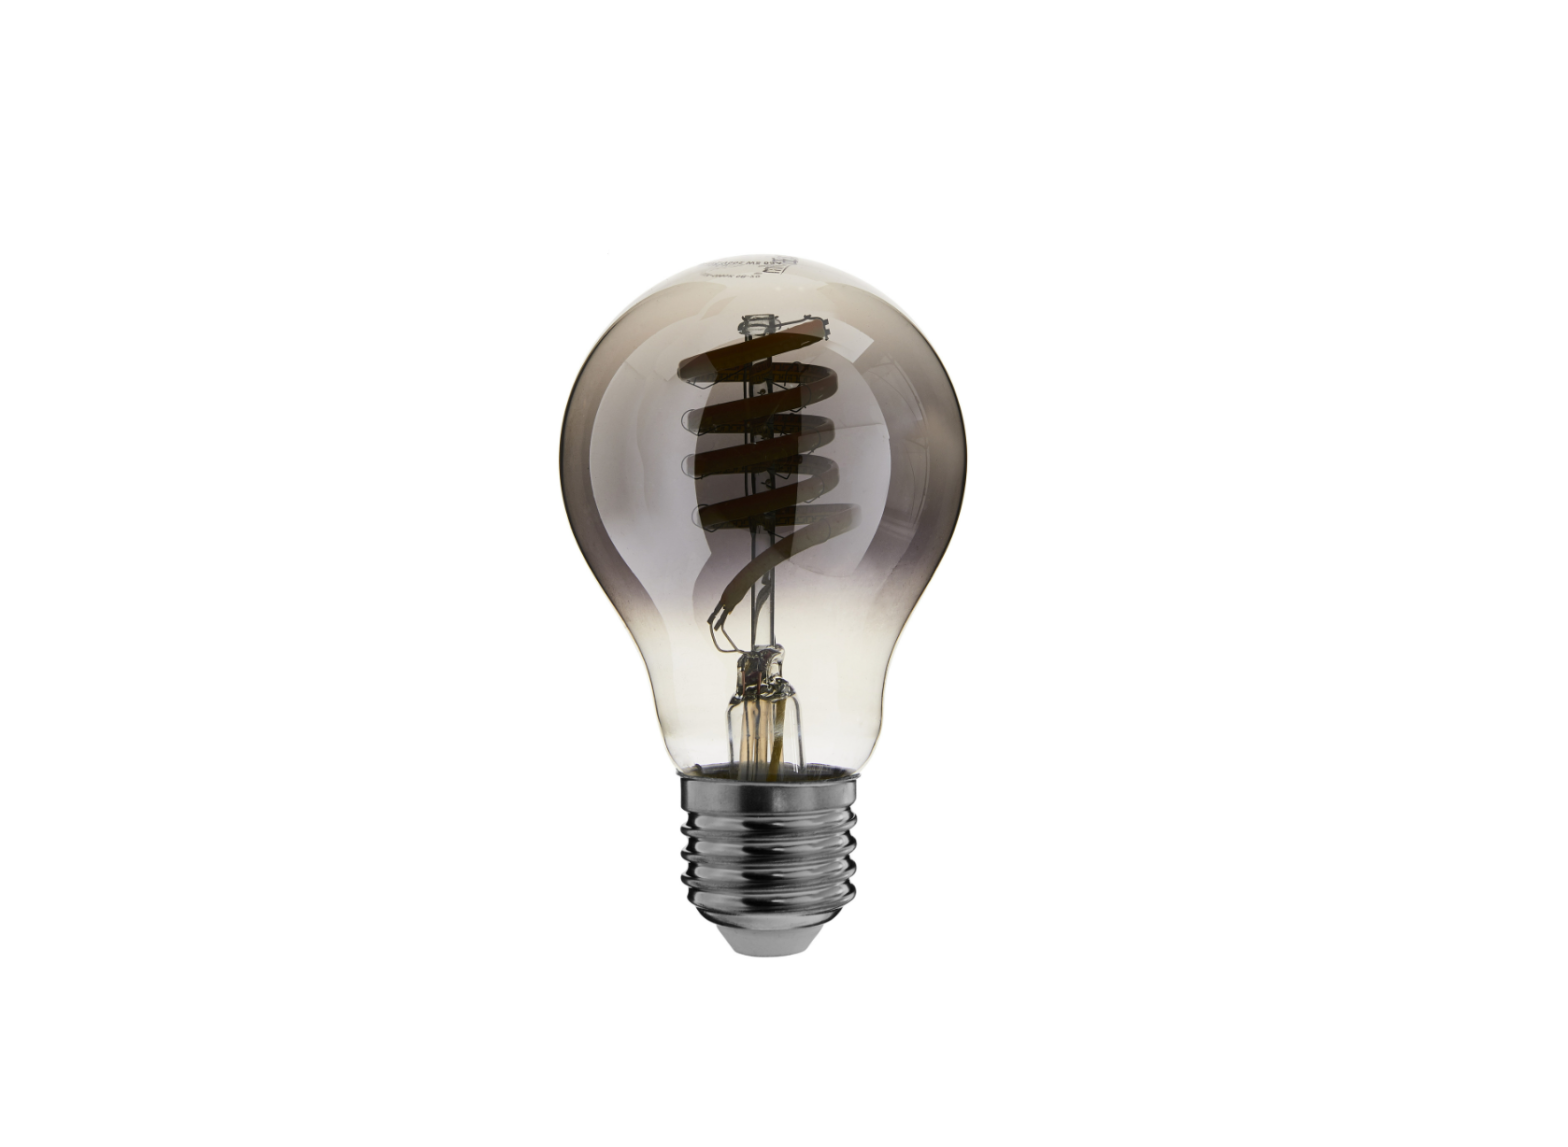 ECO-DIM Zigbee LED Filament Bulb A60 Instructions